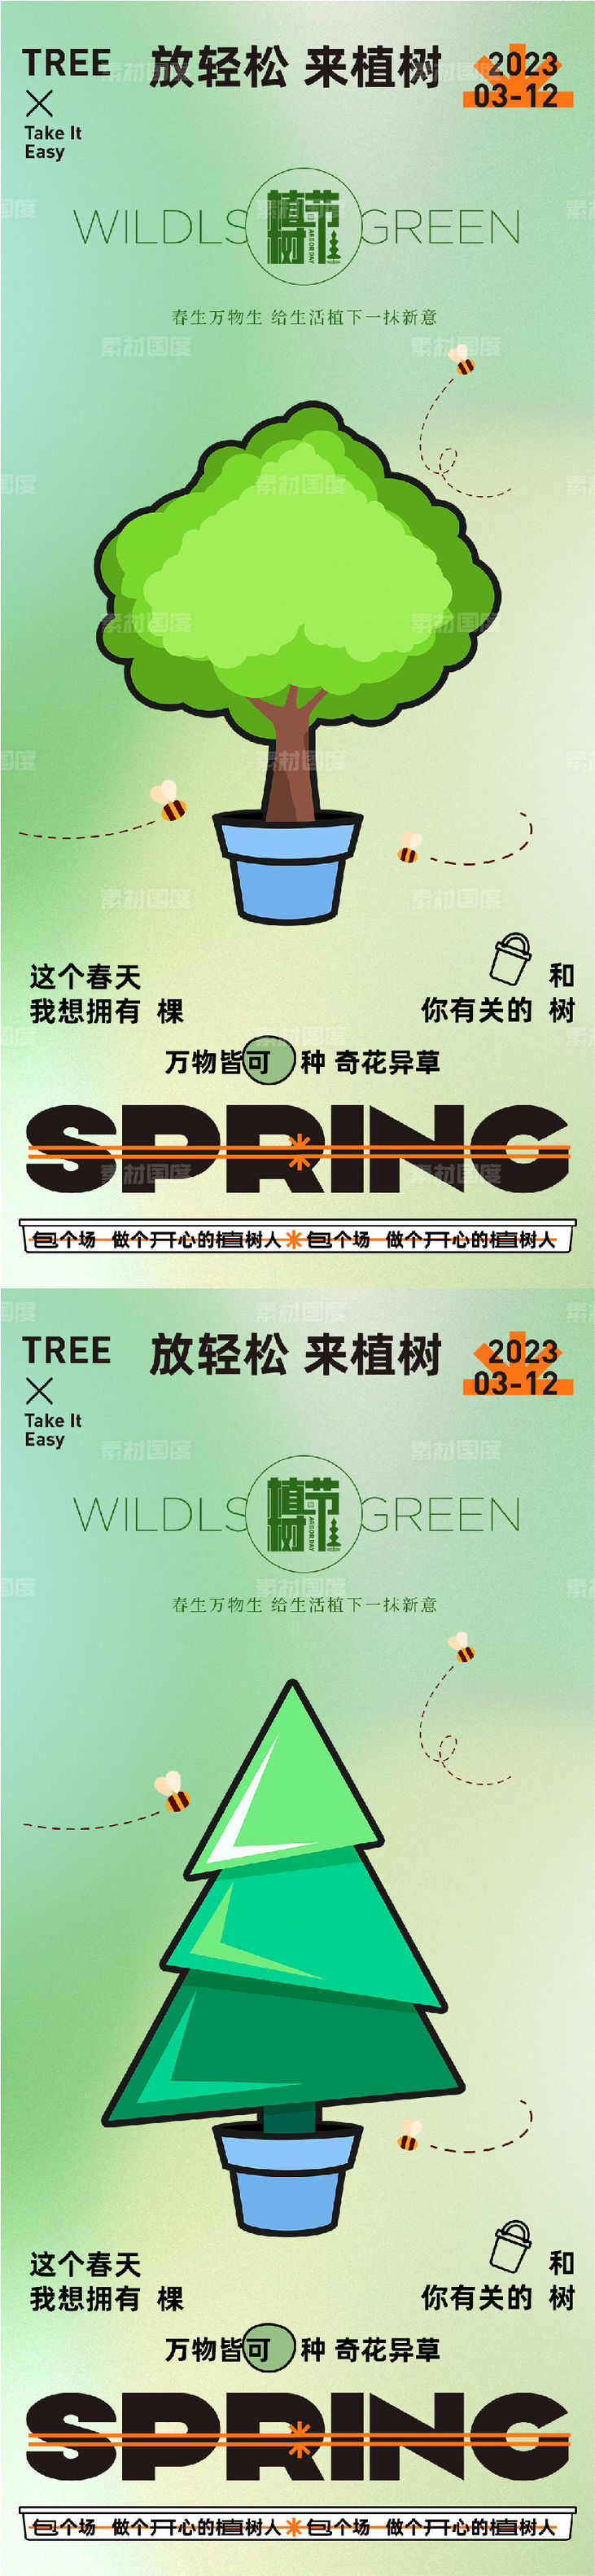 312创意植树节宣传海报